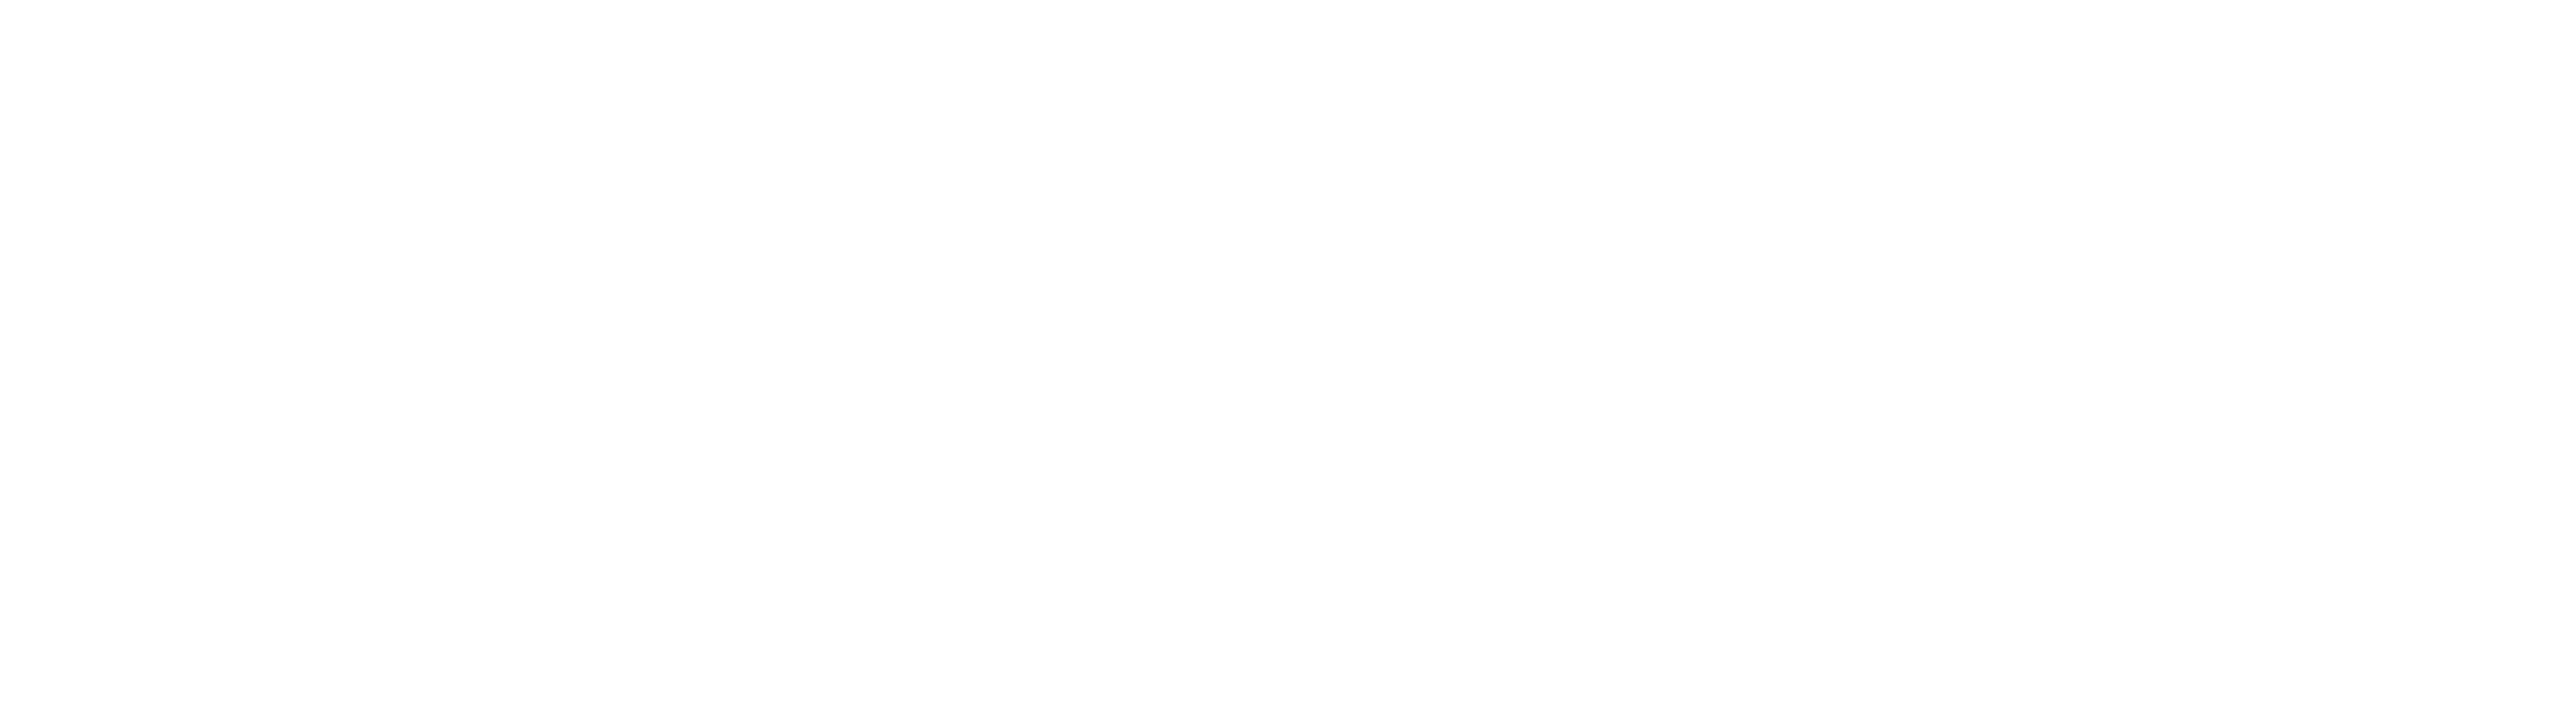 Lasso-x_white_logo